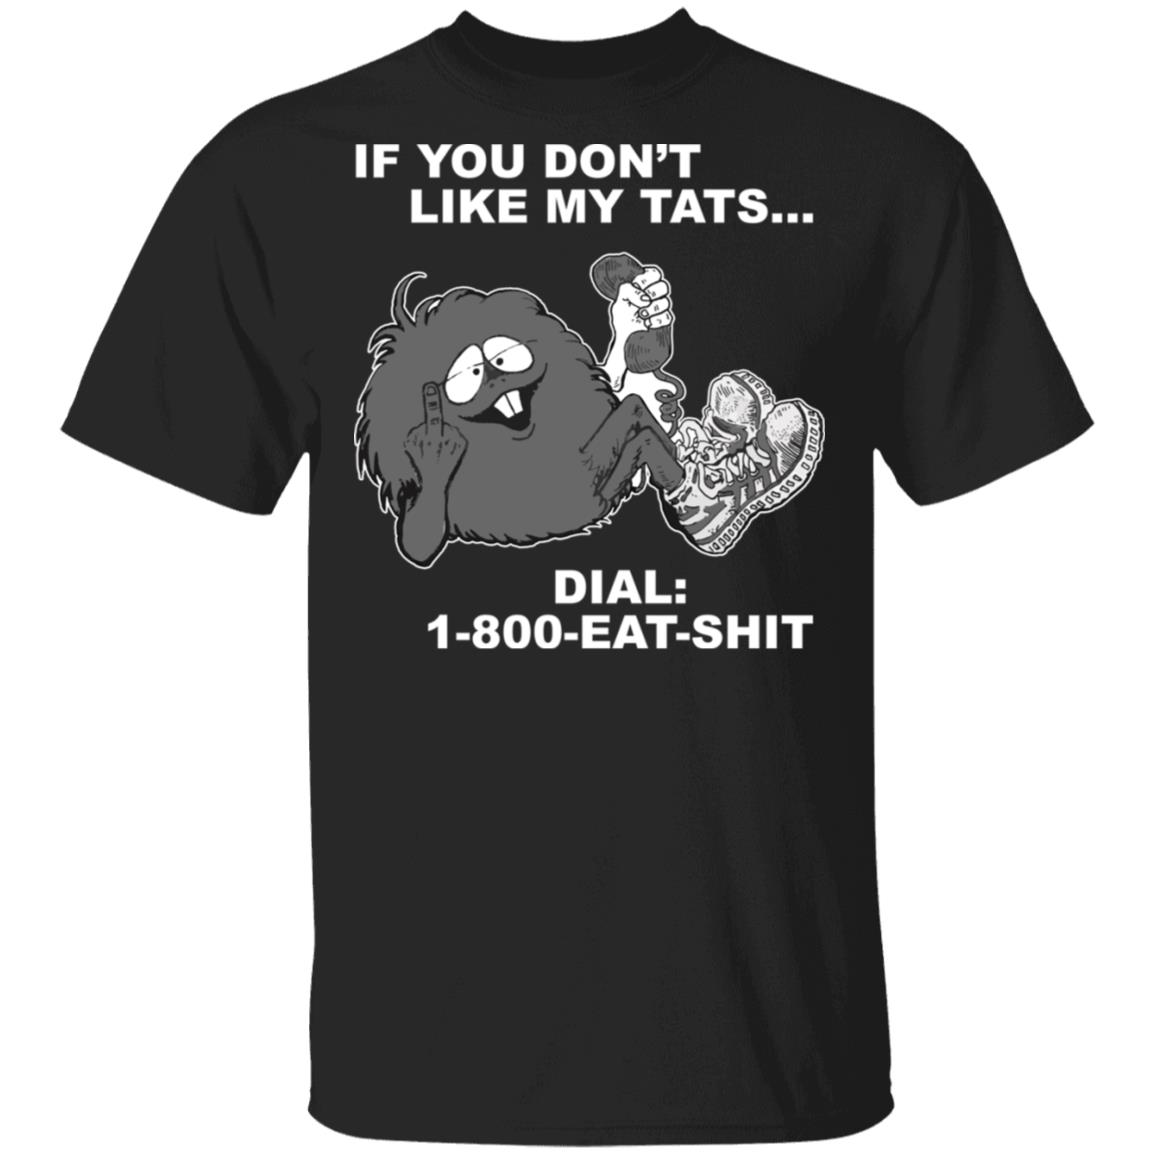 If you don't like my tats dial 1-800-eat-shit shirt - Rockatee